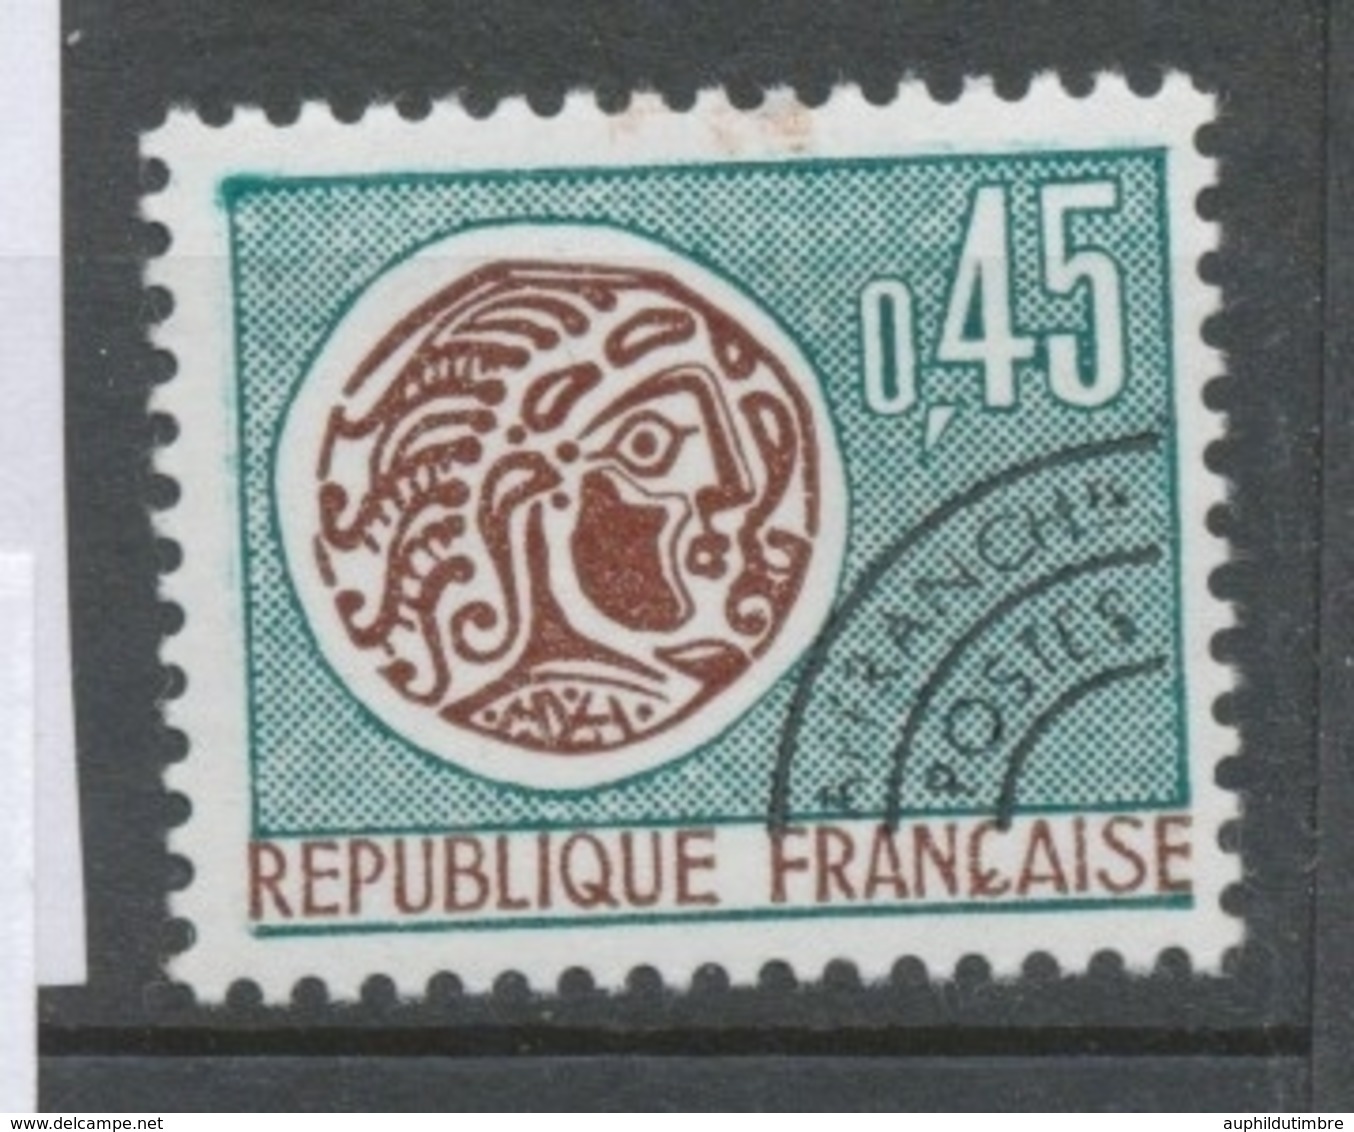 Préoblitérés N°132 Monnaie Gauloise.  45c. Bistre Et Vert ZP132 - 1964-1988